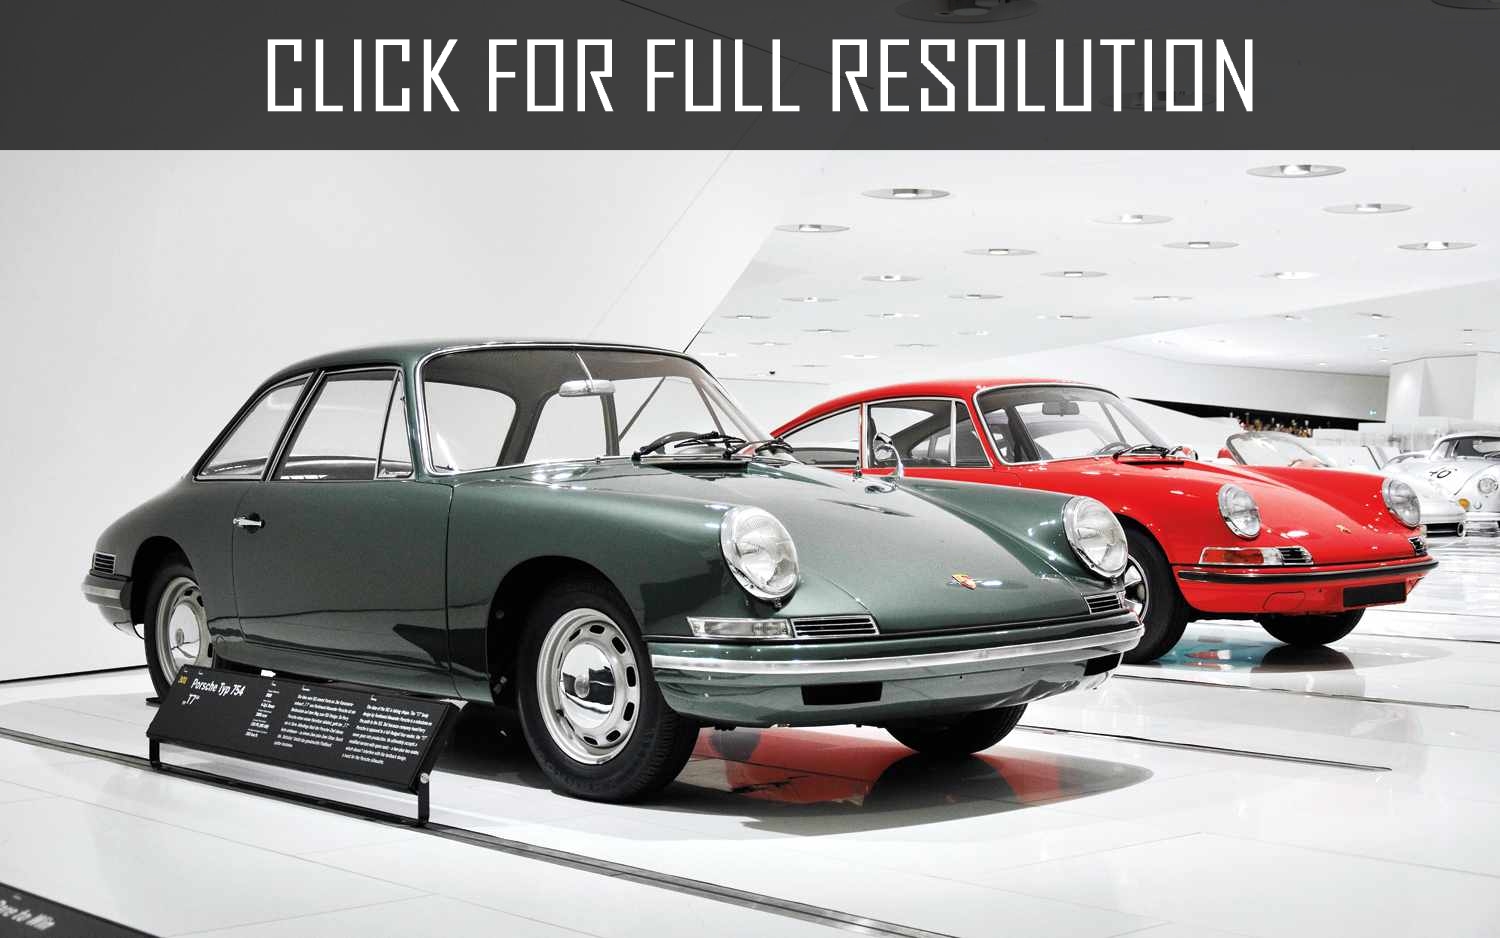 1959 Porsche 911